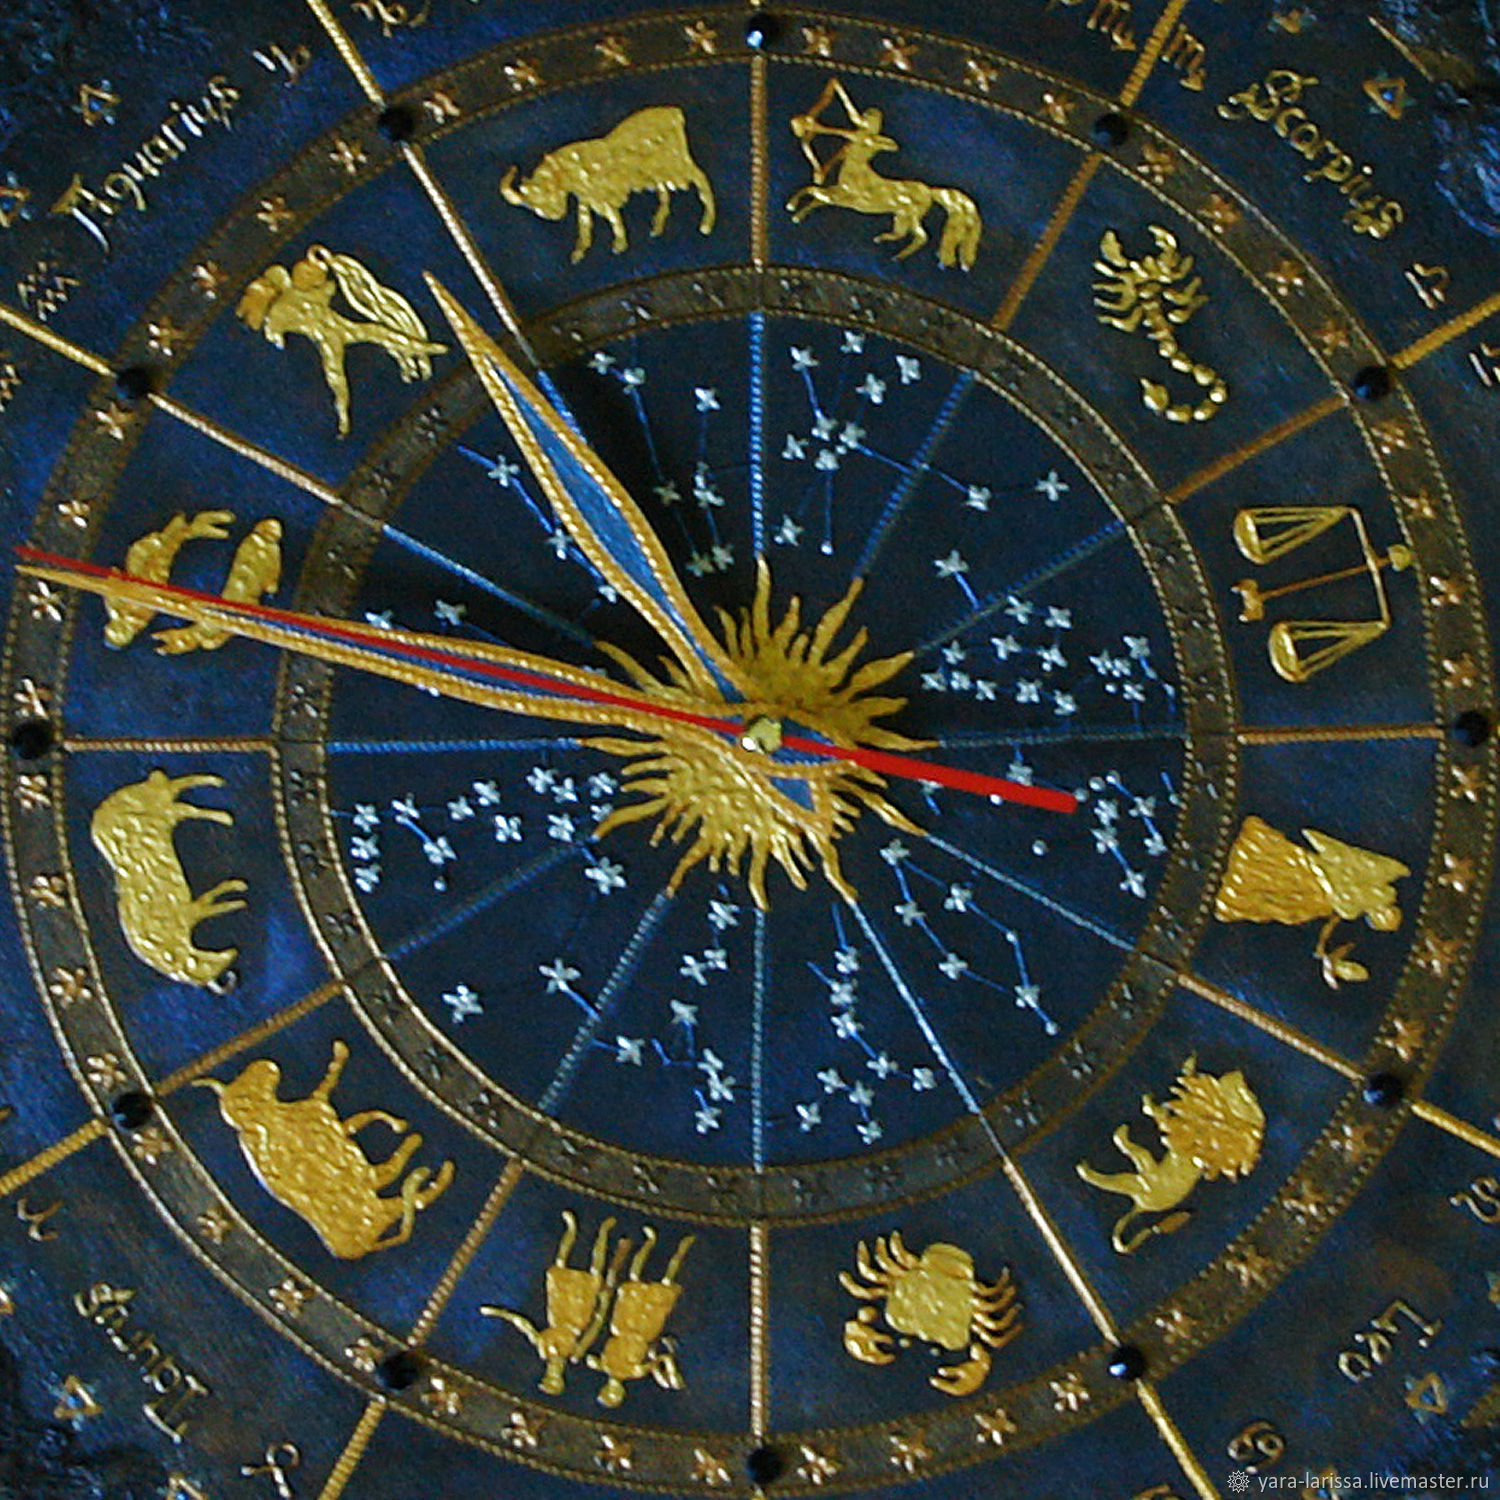 Часы зодиак. Астрологические часы. Настенные часы "знаки зодиака". Часы со знаками зодиака. Часы настенные астрологические.